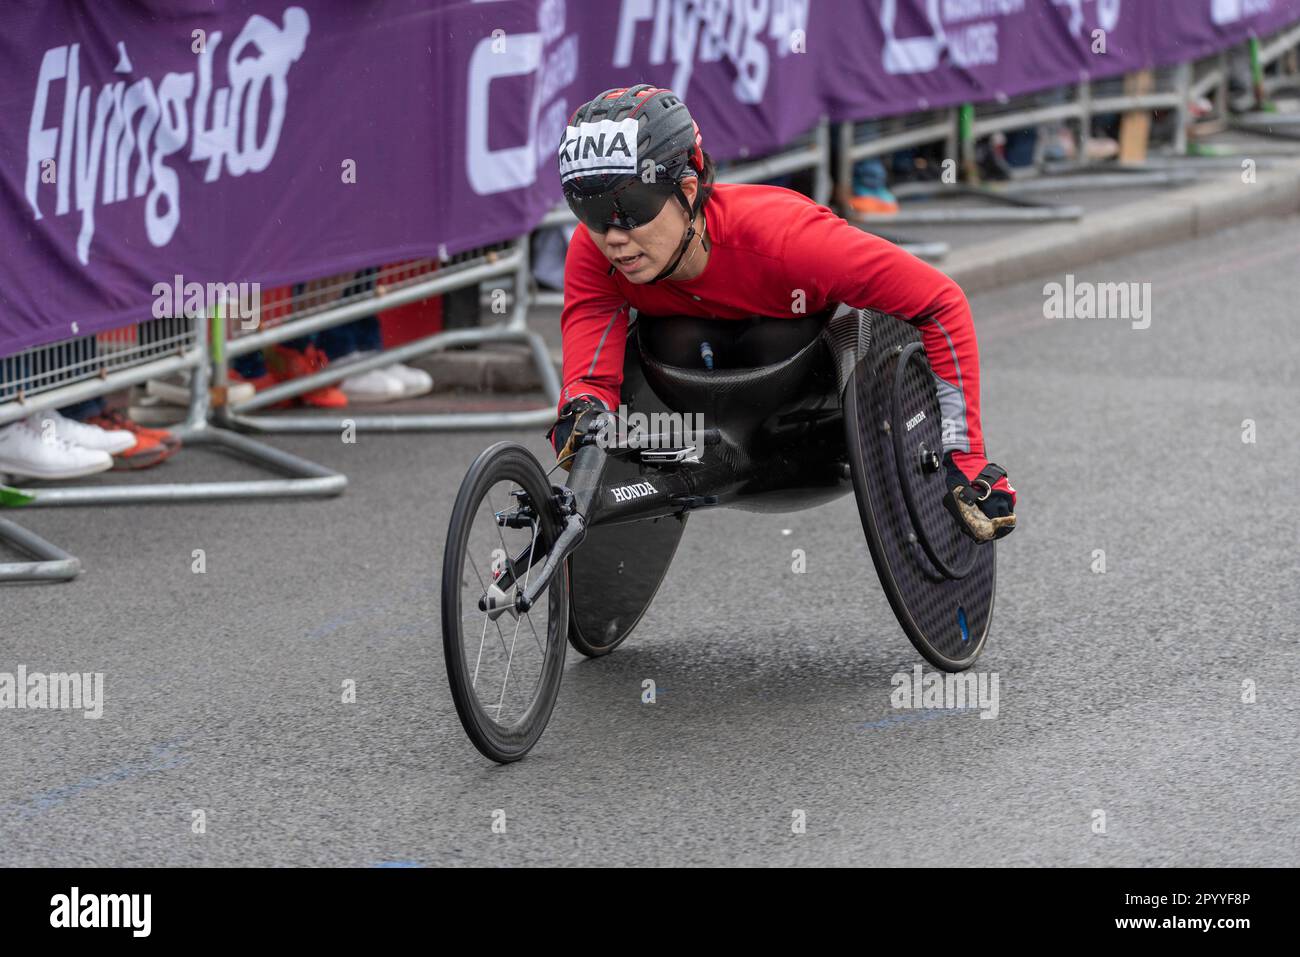 Tsubasa Kina participe au TCS London Marathon 2023 en passant par Tower Hill, Londres, Royaume-Uni. Athlète en fauteuil roulant. Athlète japonais para. Banque D'Images